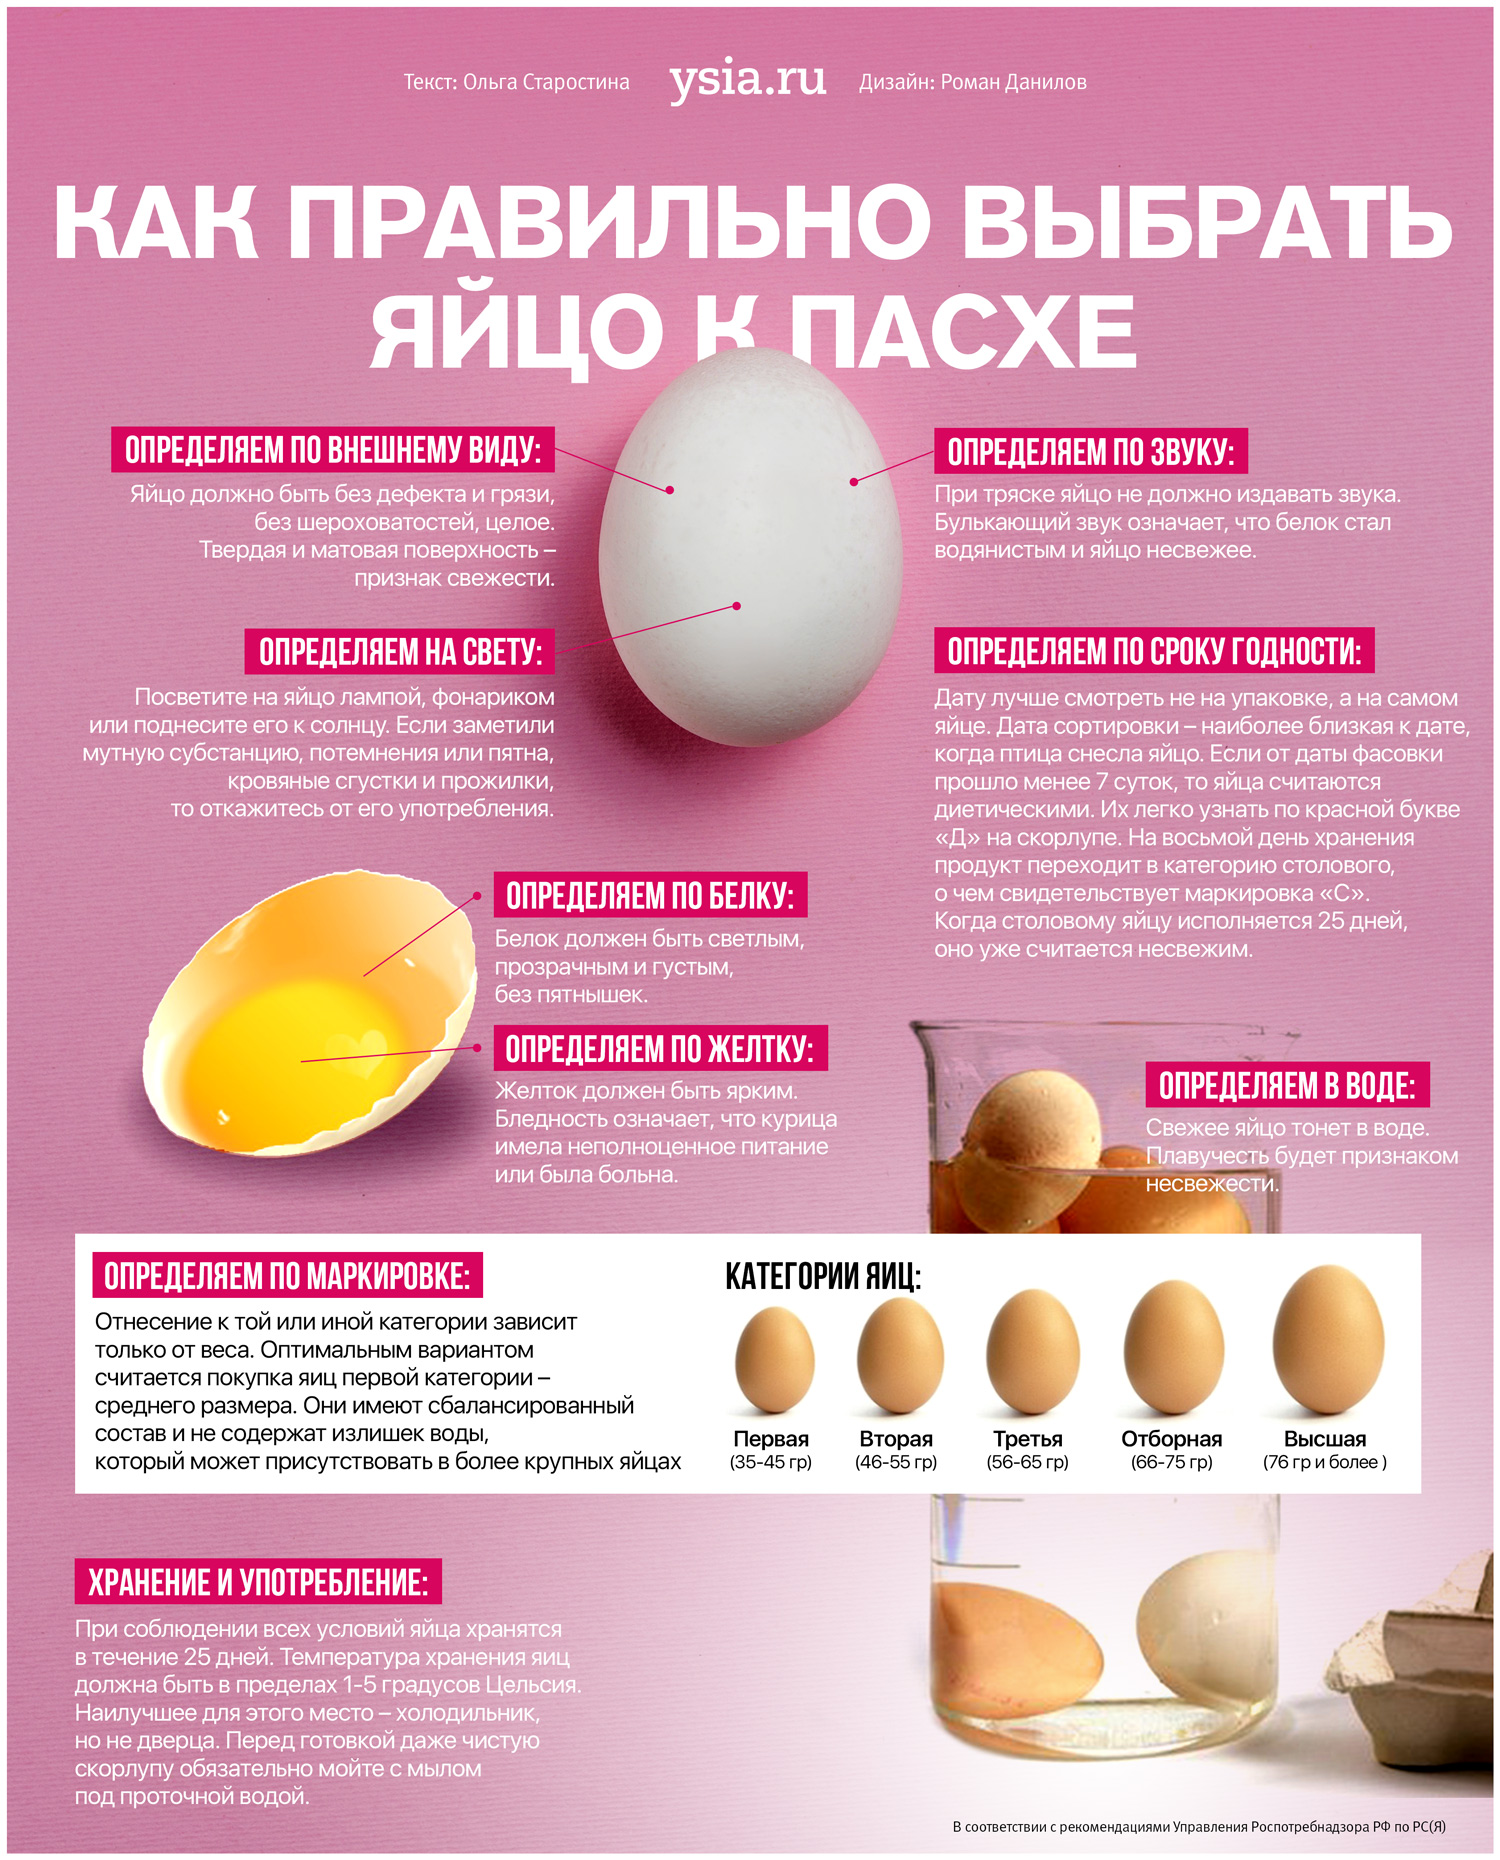 Как правильно выбирать яйца. Как выбрать яйца. Инфографика яйцо. Категории яиц куриных.